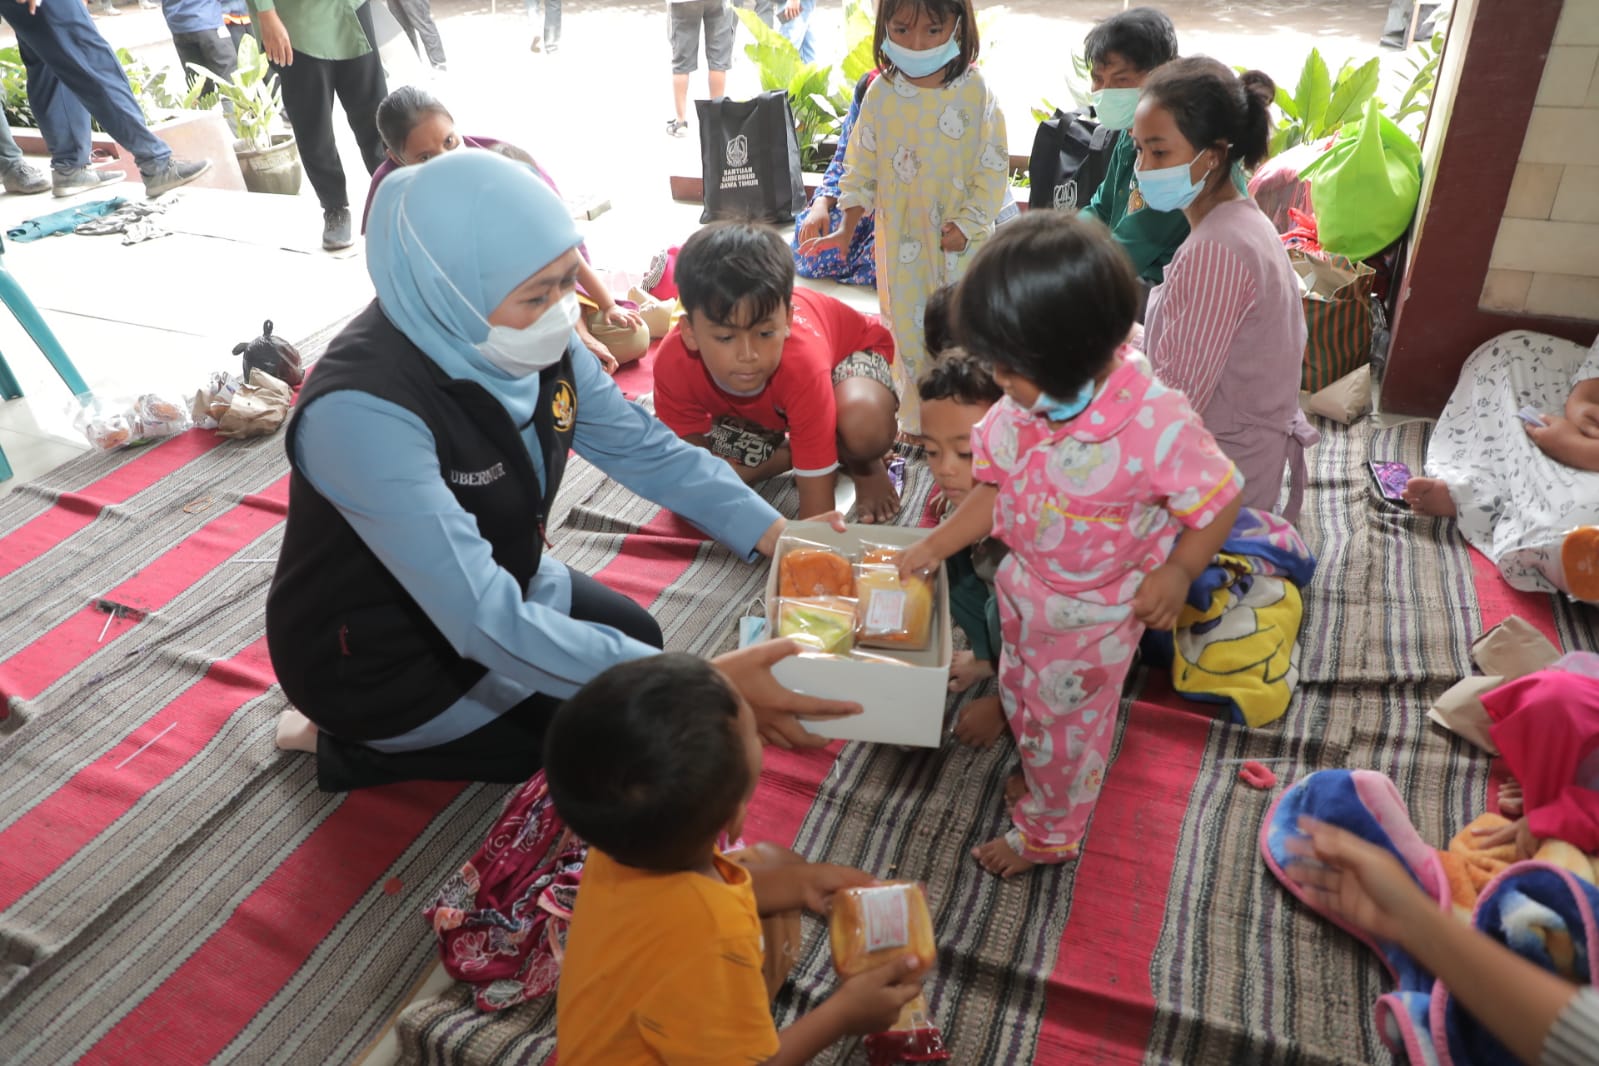 Teks foto: Gubernur Khofifah meninjau pengungsian warga terdampak erupsi gunung Semeru sambil menyerahkan bantuan dan menghibur anak- anak. (Ist)